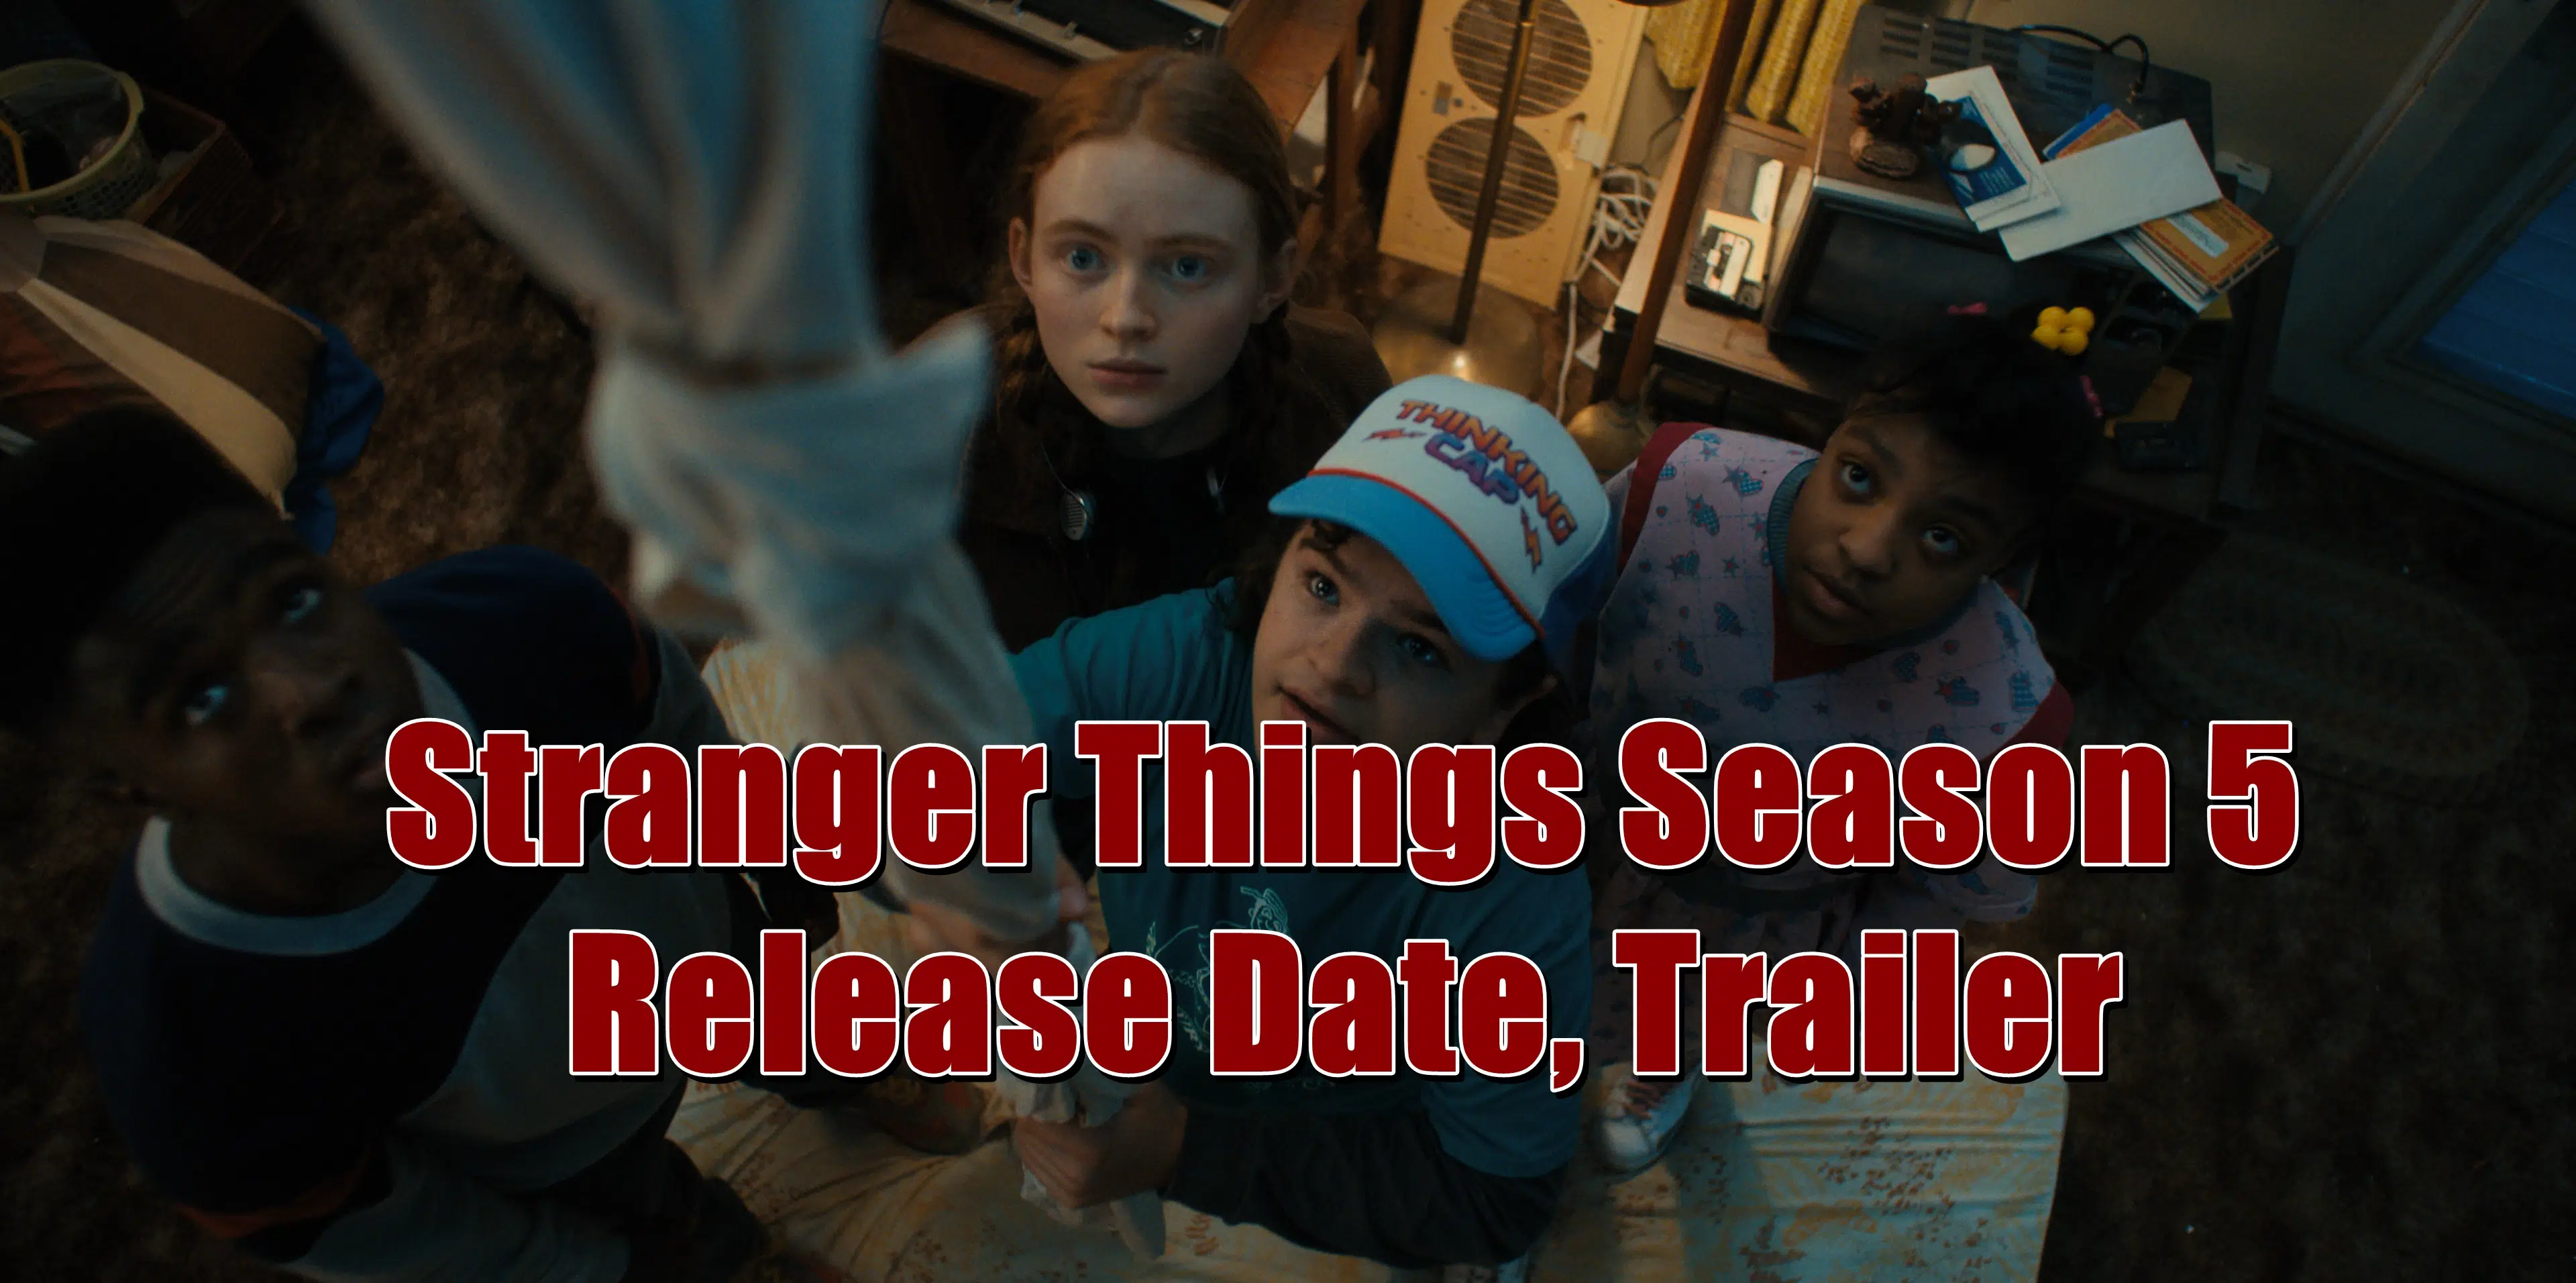 Stranger Things Season 5 Release Date, Trailer